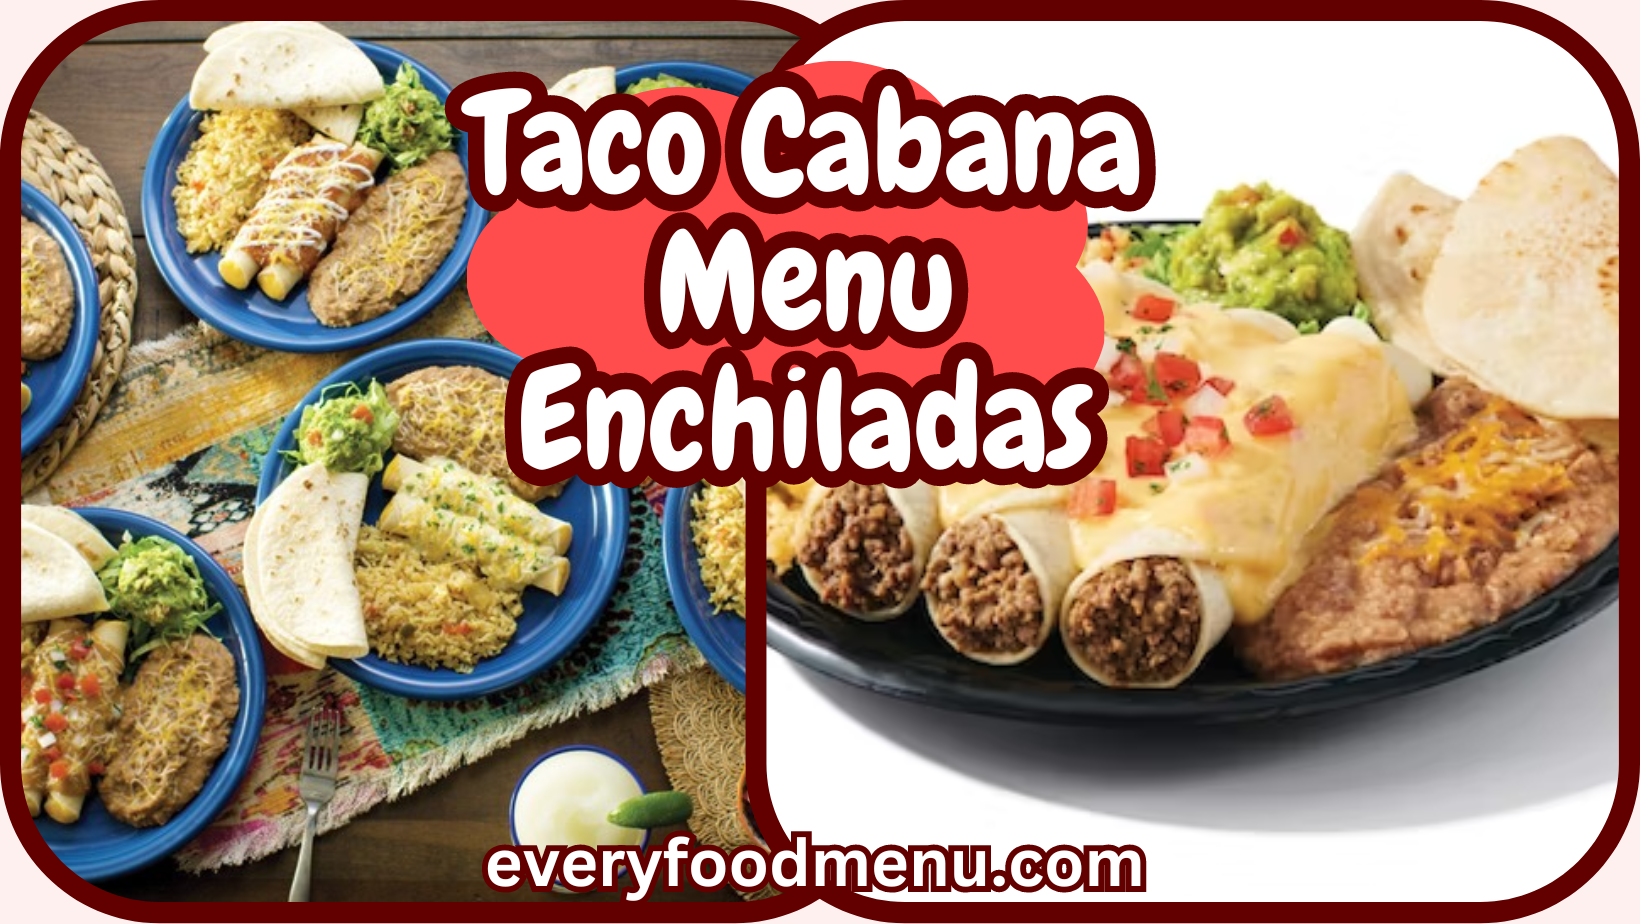 Taco Cabana Menu Enchiladas